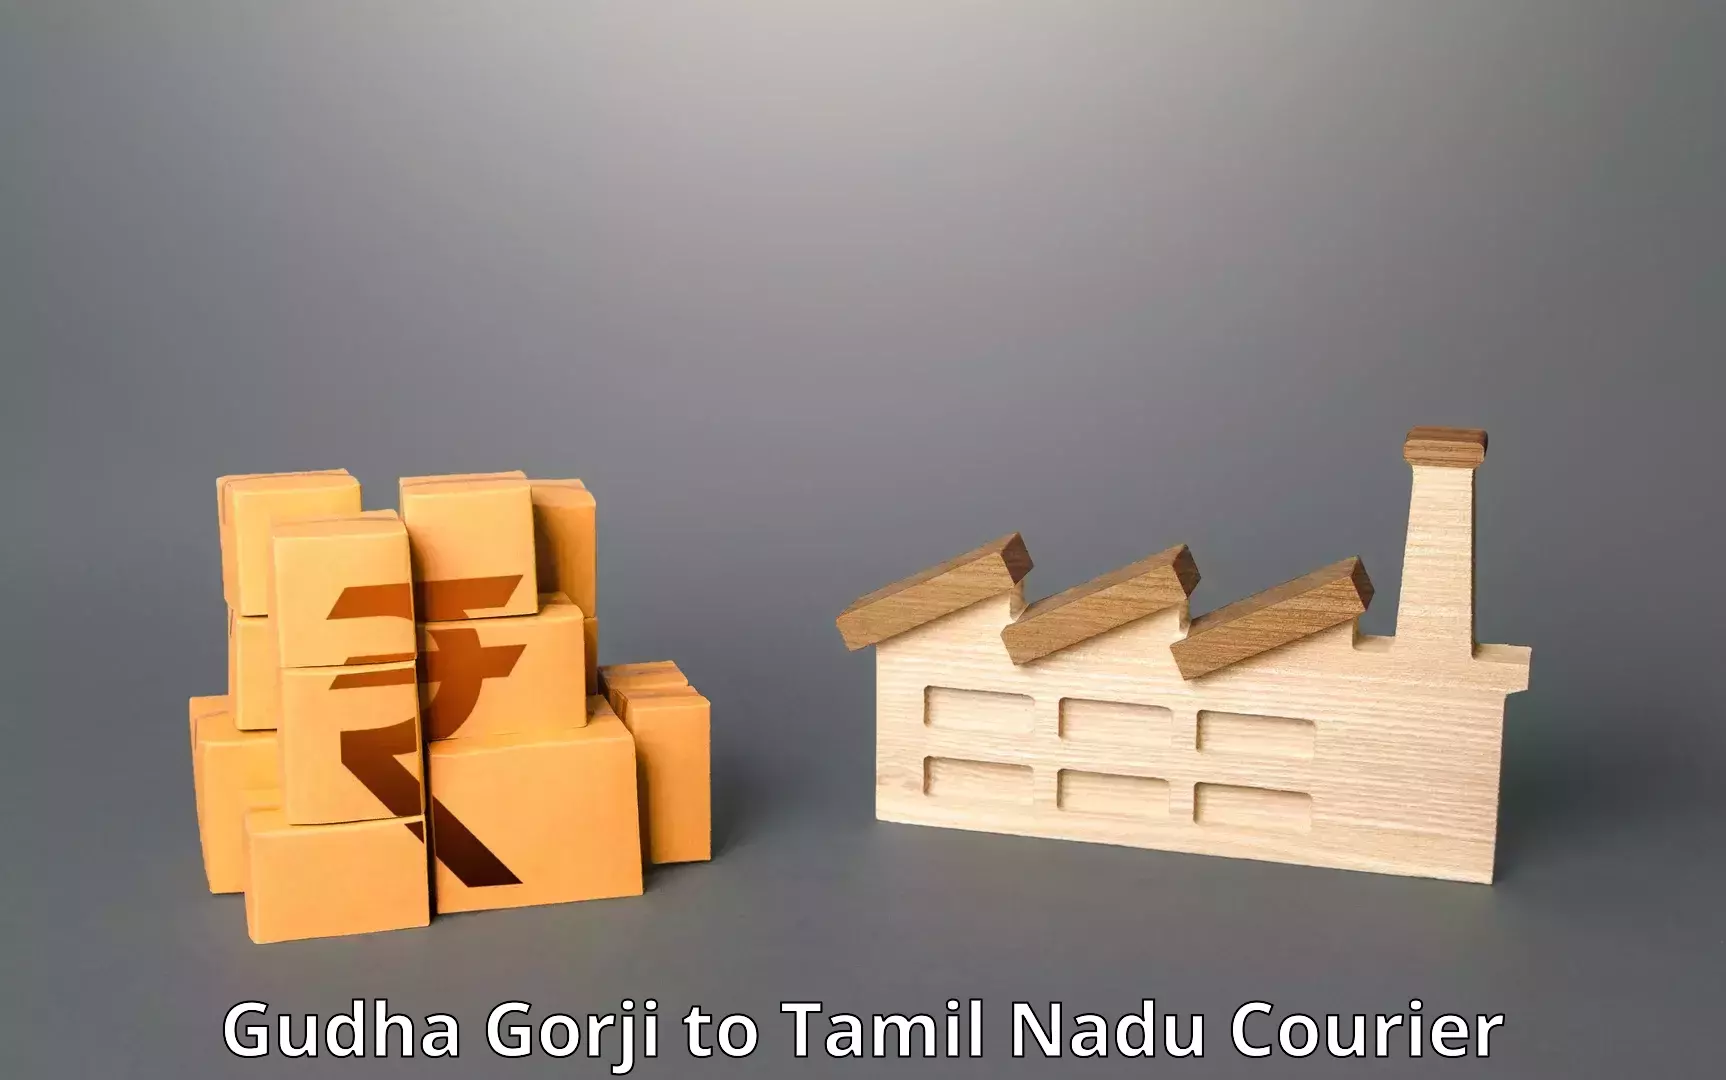 Efficient shipping operations Gudha Gorji to Tiruturaipundi